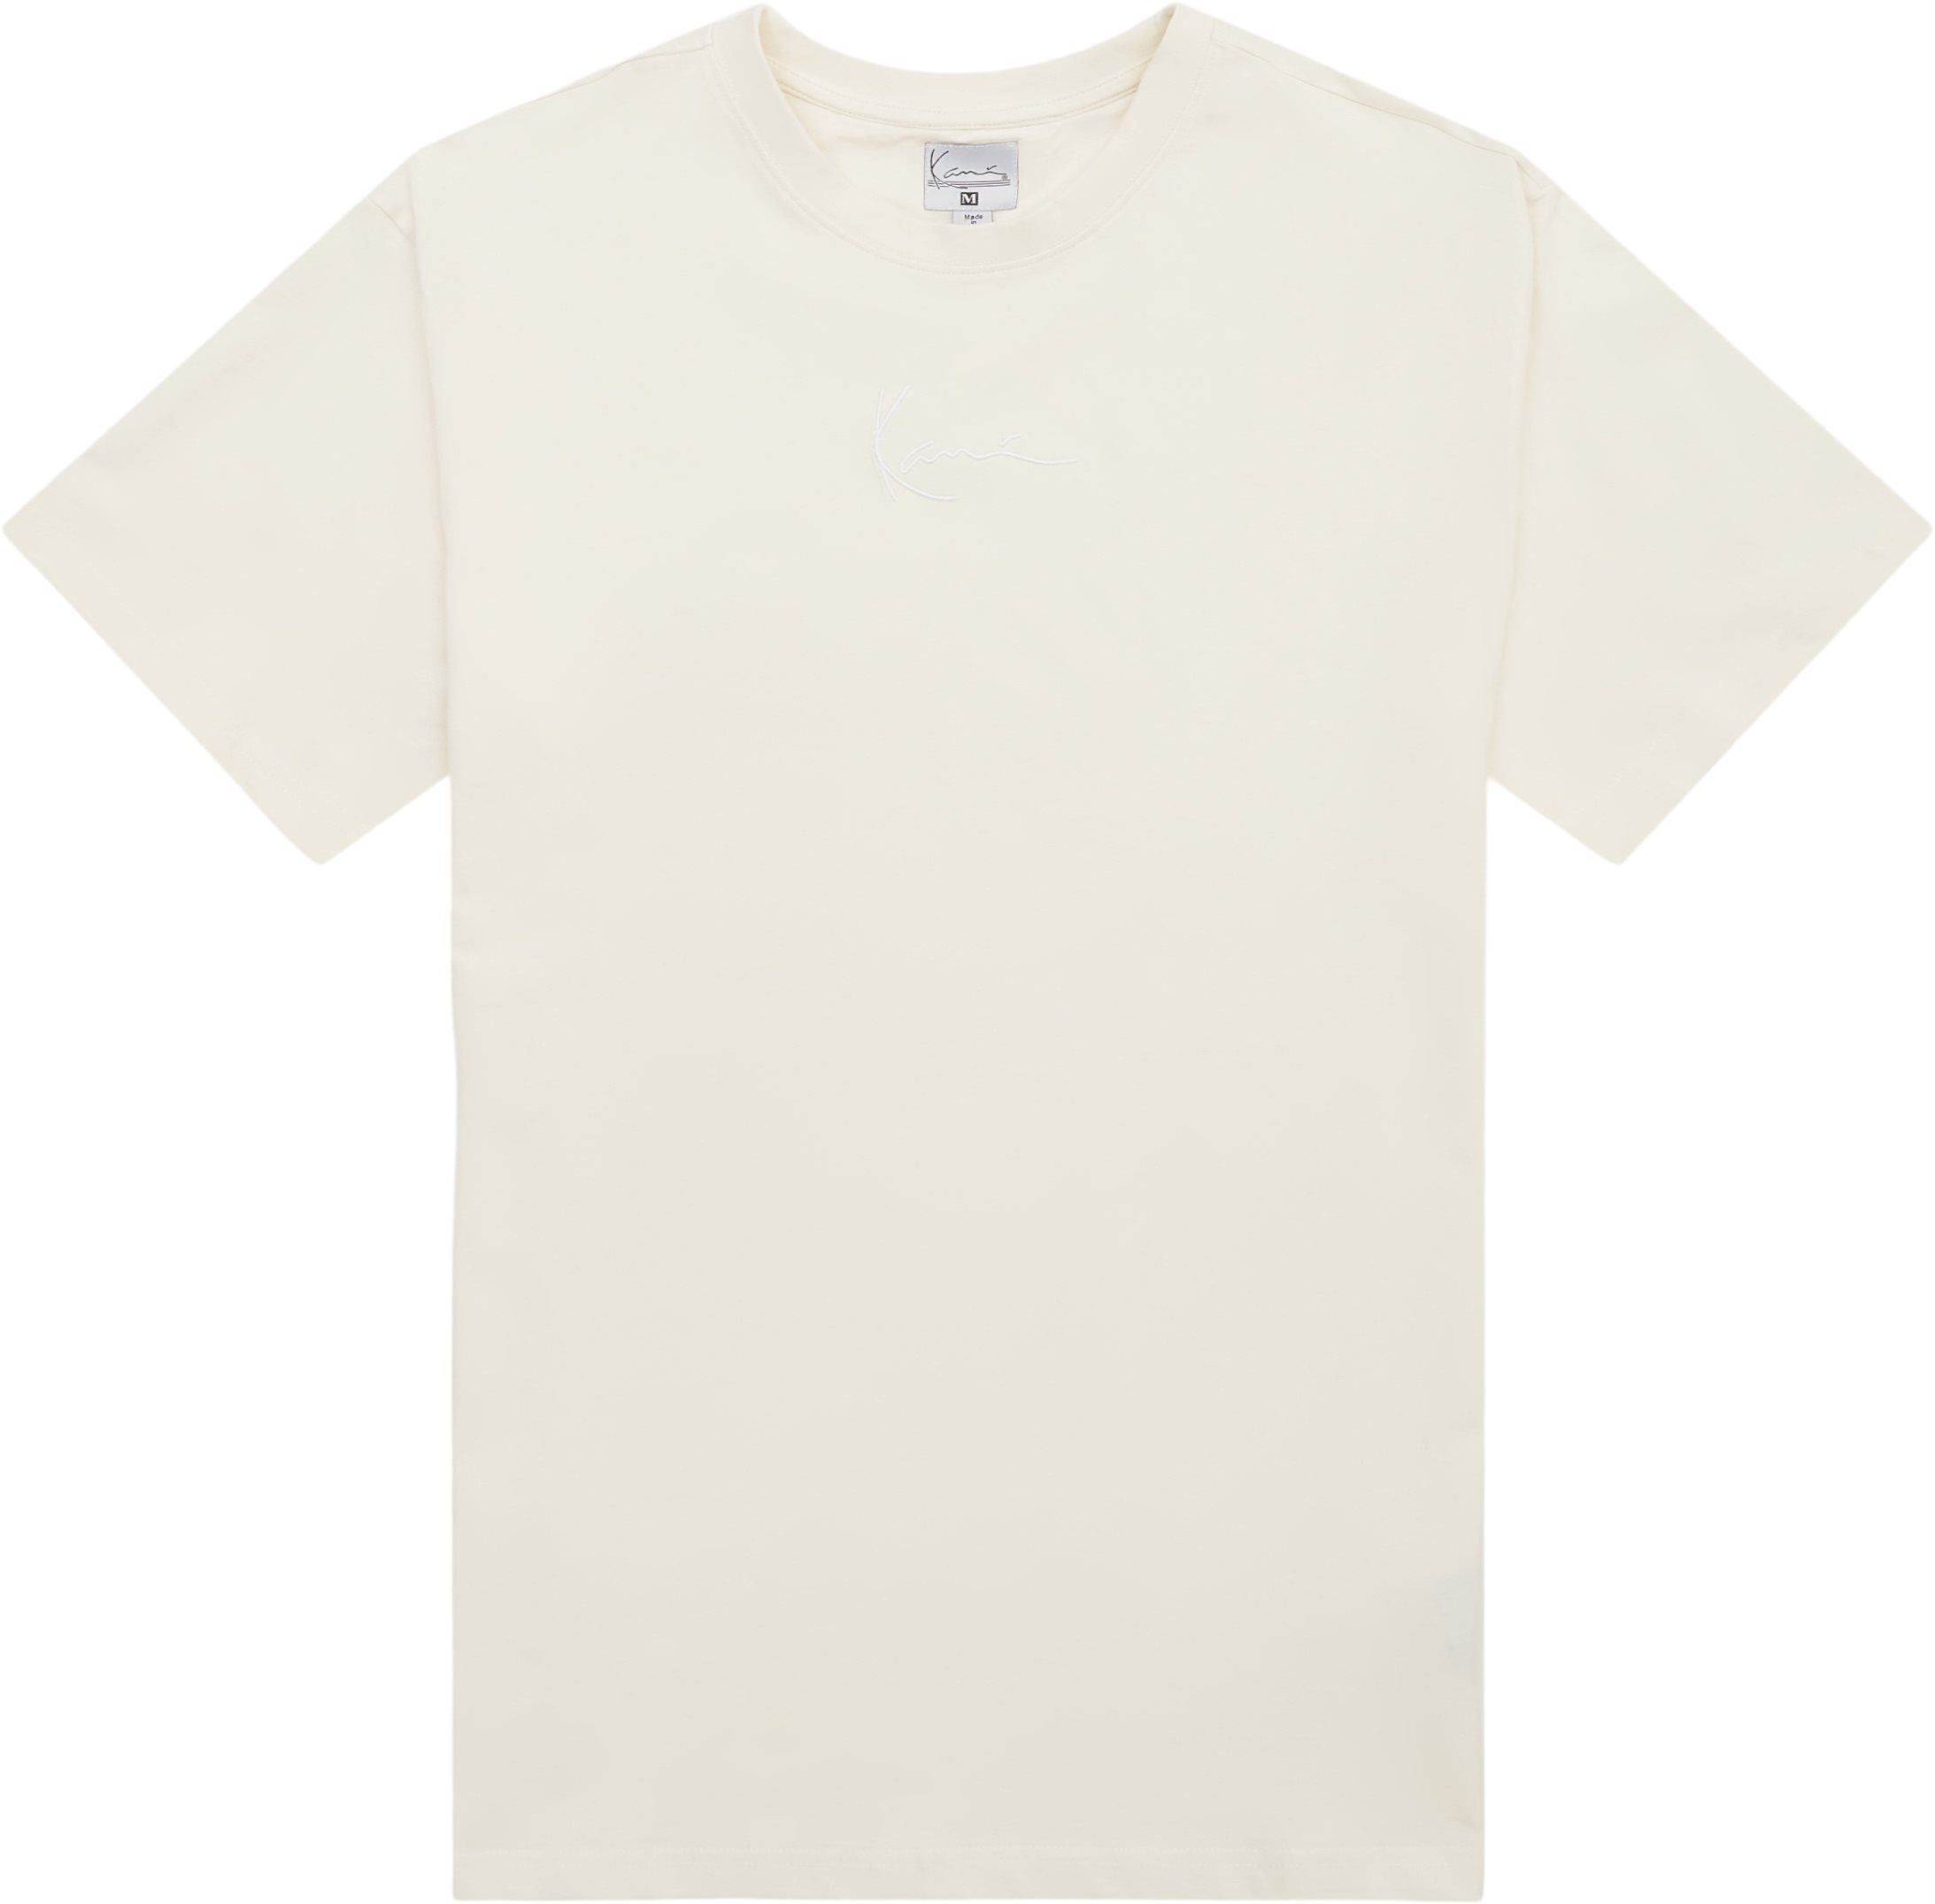 Karl Kani T-shirts SMALL SIGNATURE ESSENTIAL TEE TE011 White